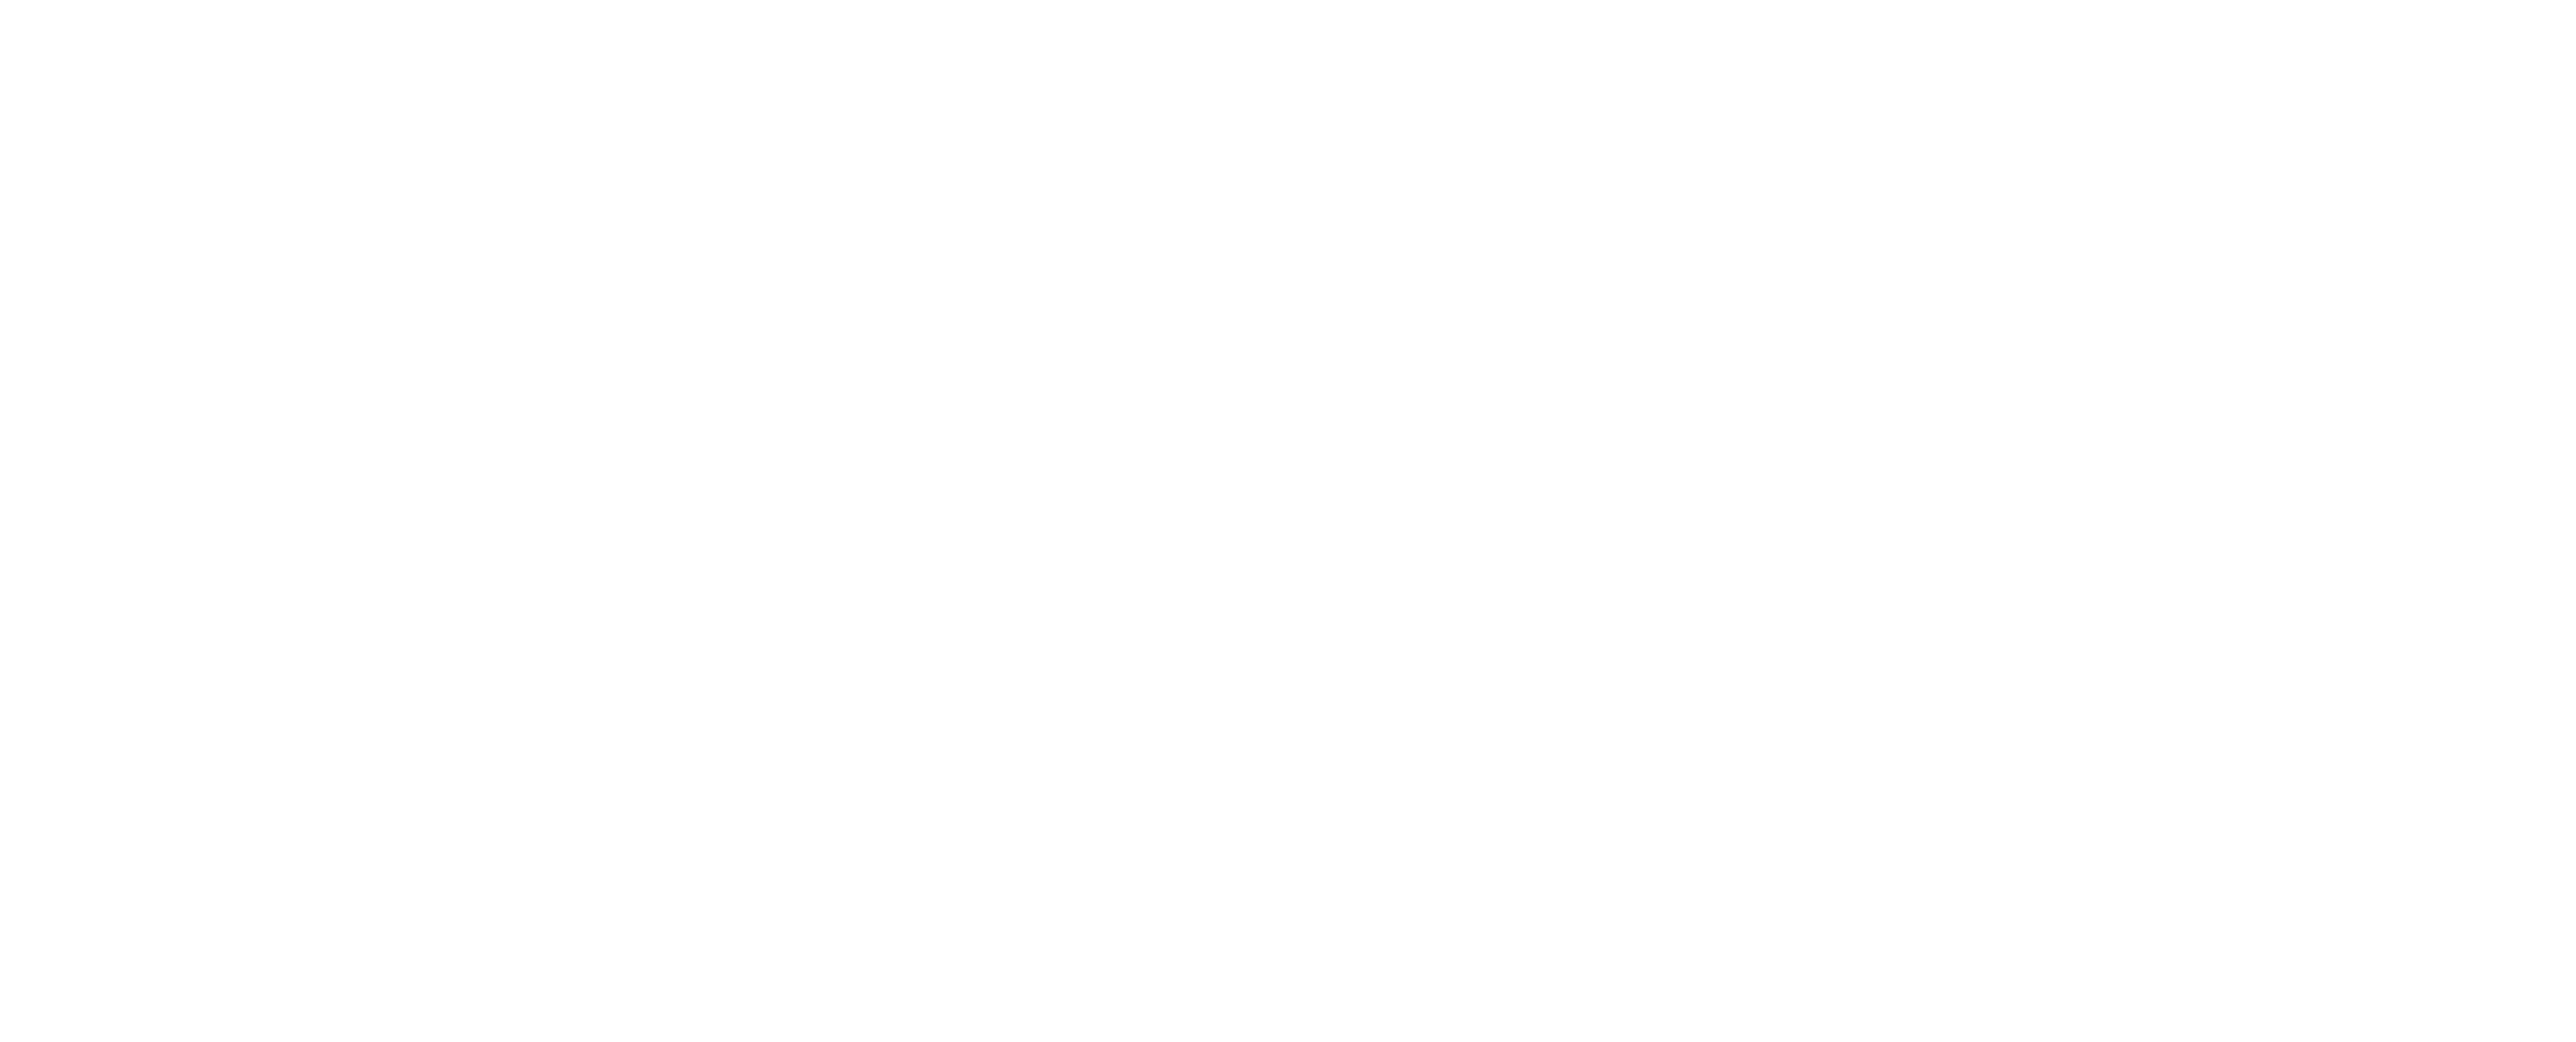 Learn Fresh logo